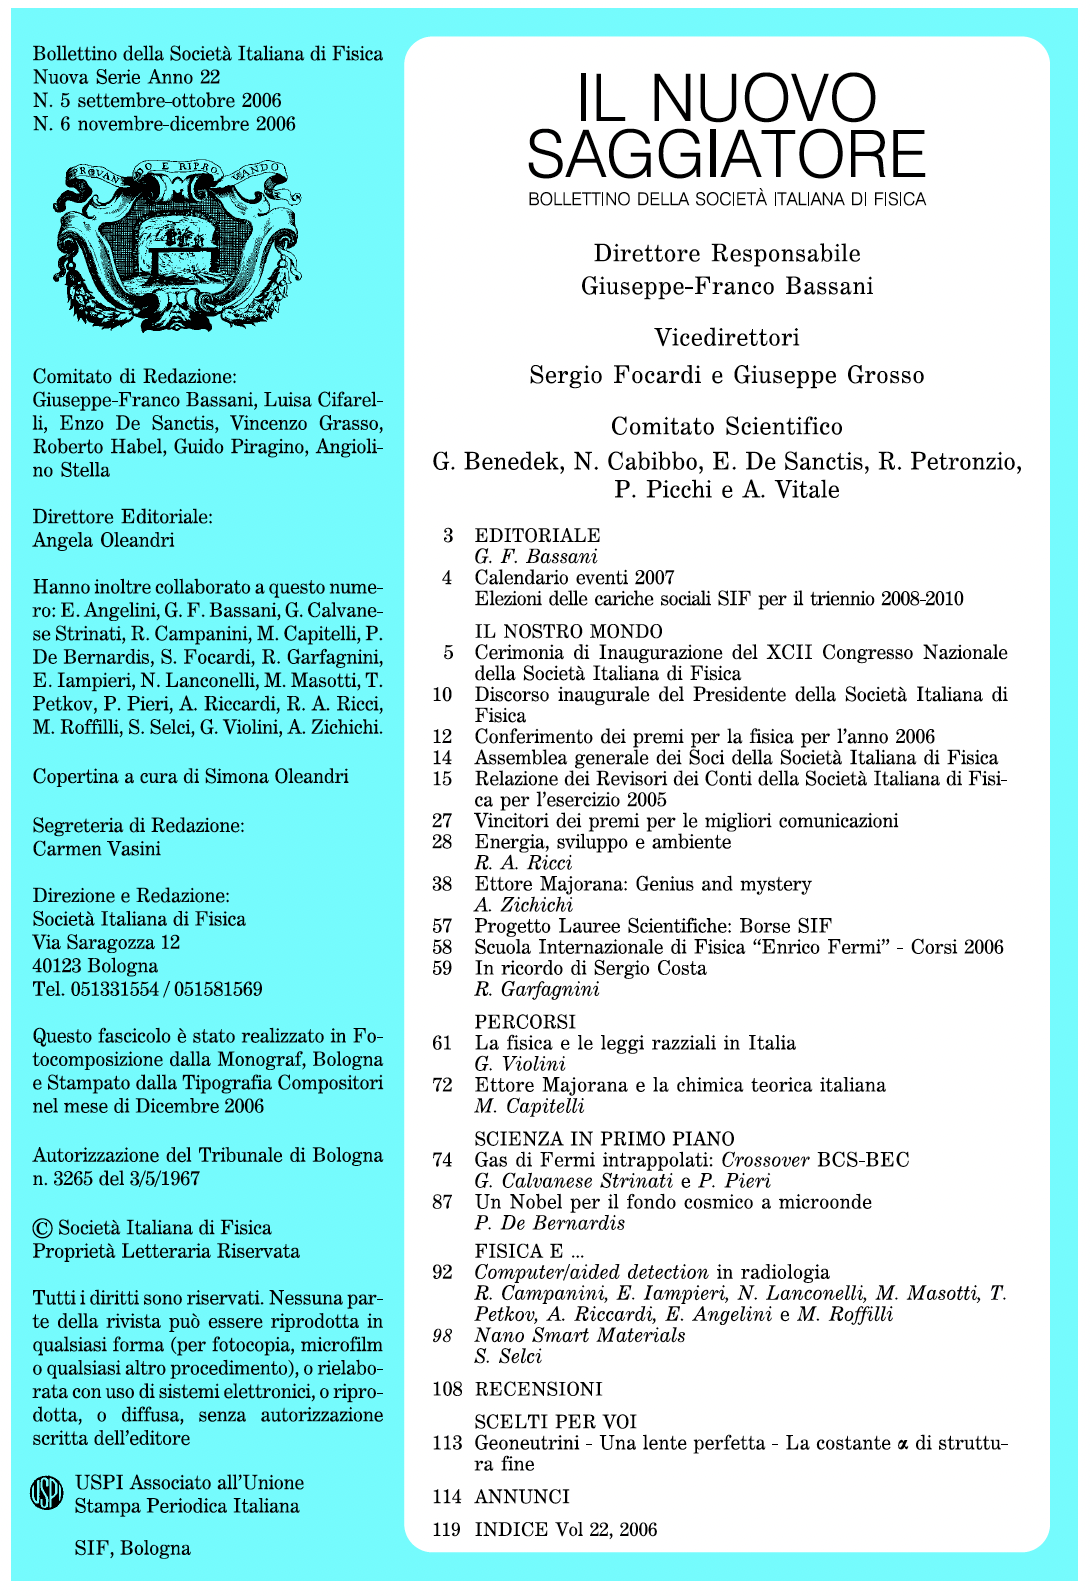 G. Violini, La fisica e le leggi razziali in Italia, articolo in rivista, 2006